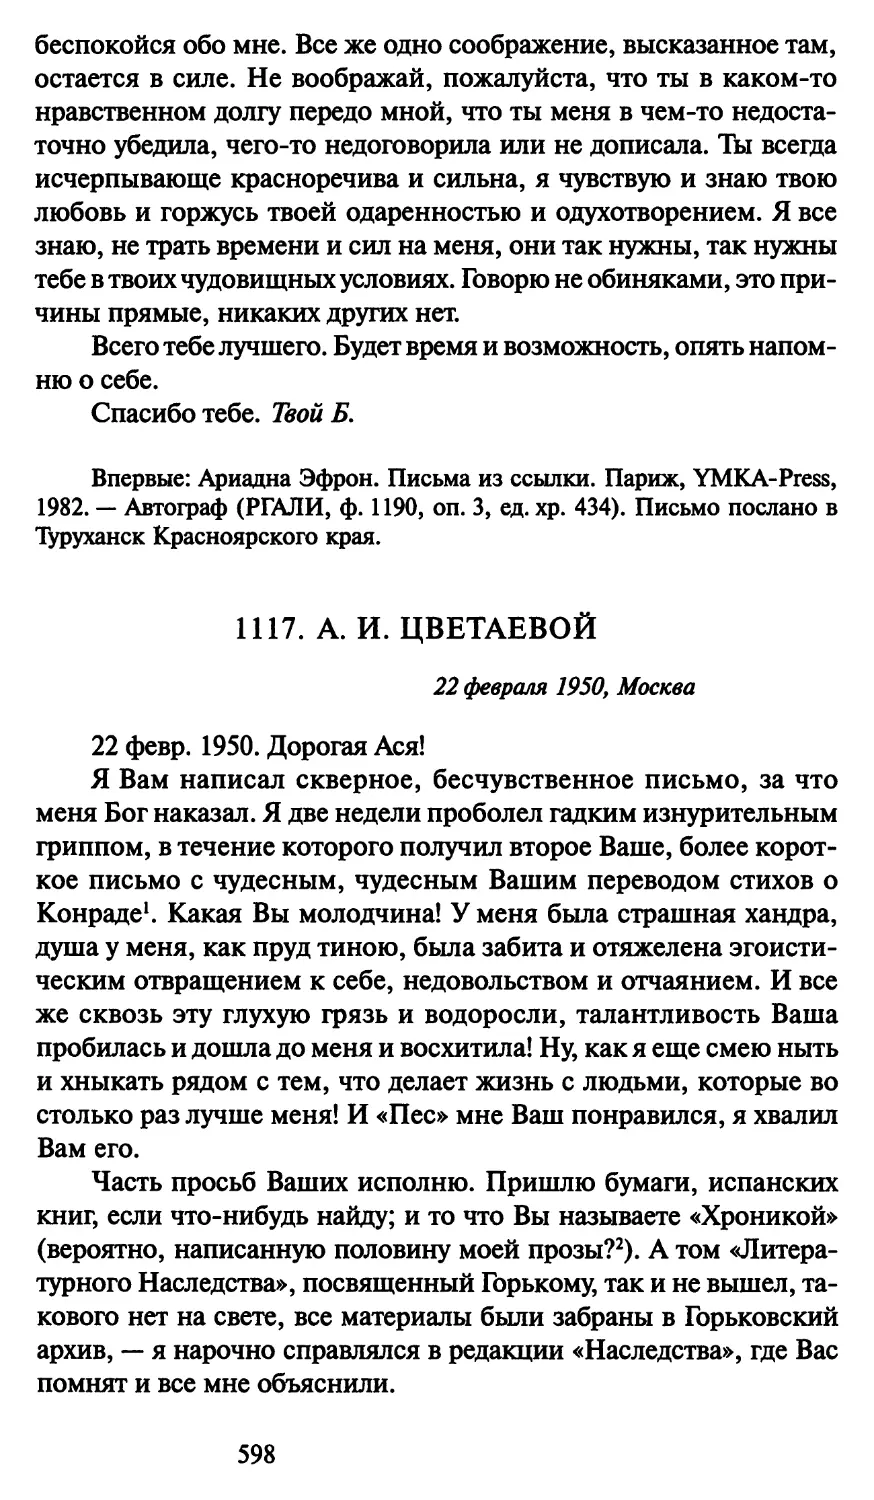 1117. А. И. Цветаевой 22 февраля 1950